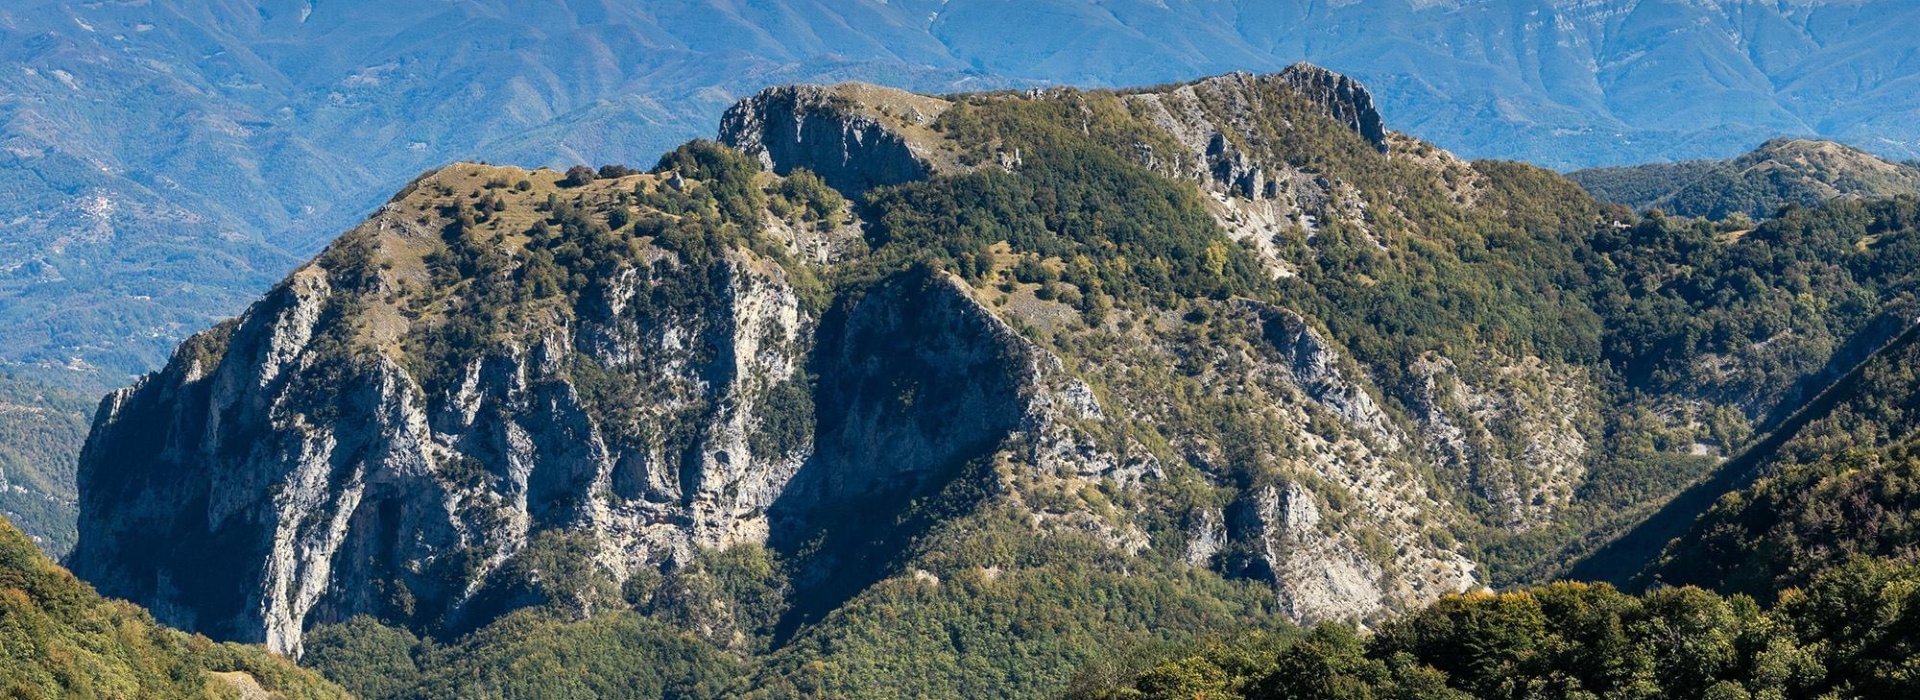 Escursione guidata al Monte Rovaio in Garfagnana